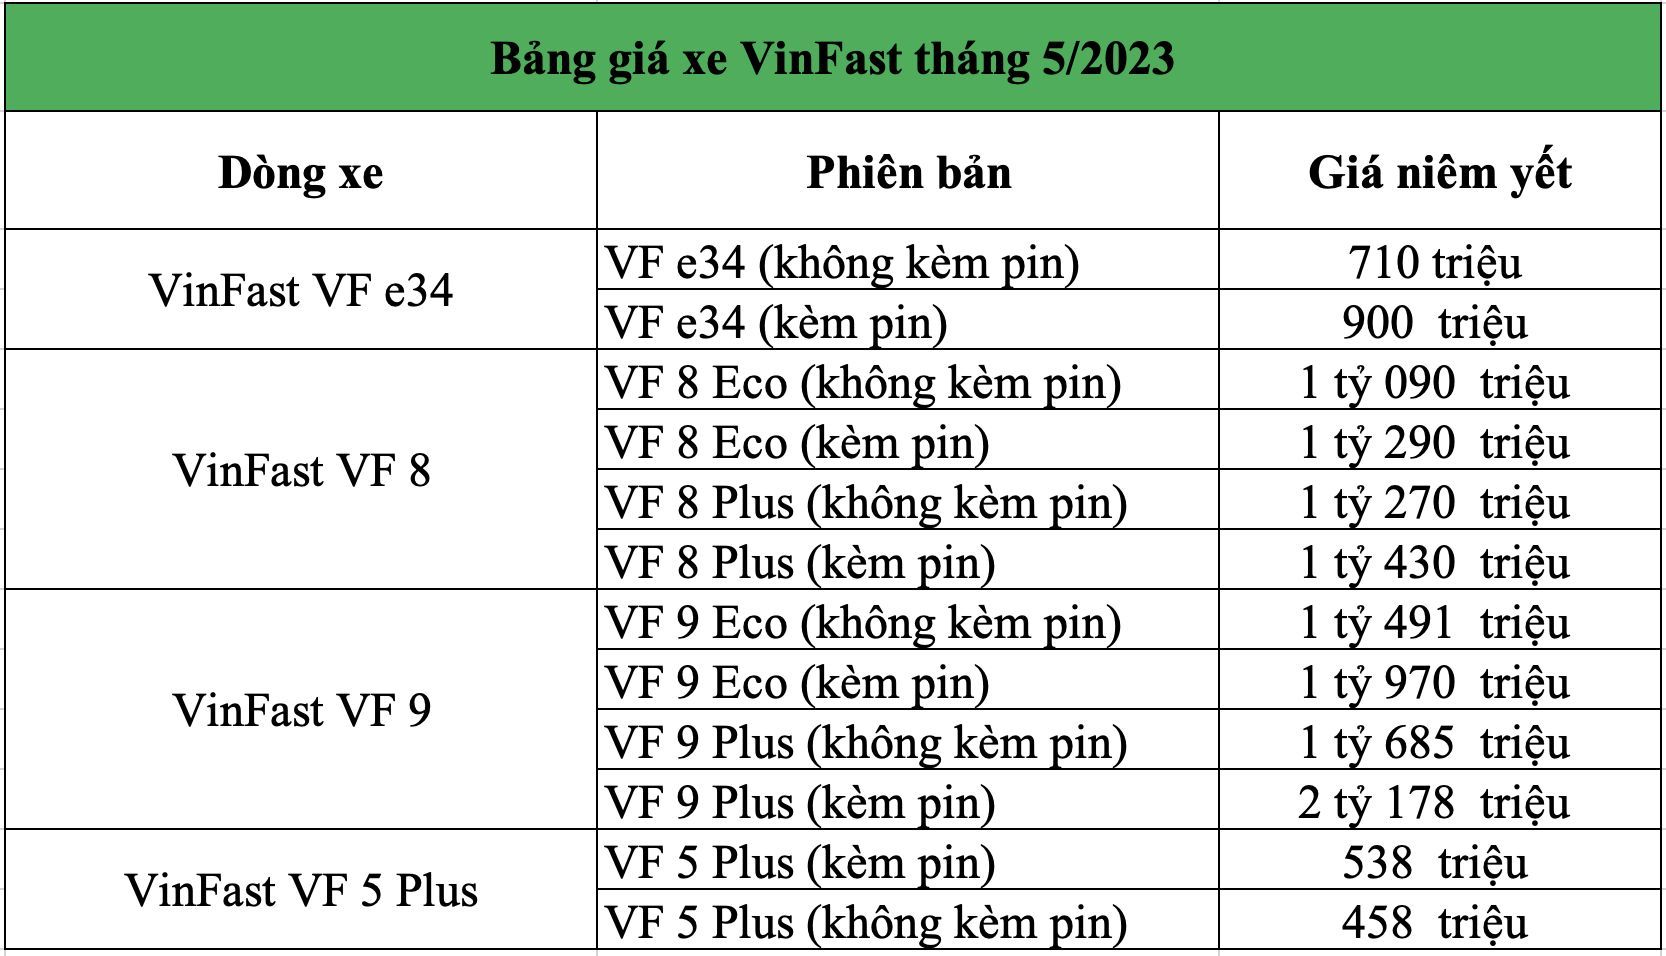 Bảng giá xe Vinfast tháng 5/2023: VF 5 Plus giá từ 458 triệu đồng